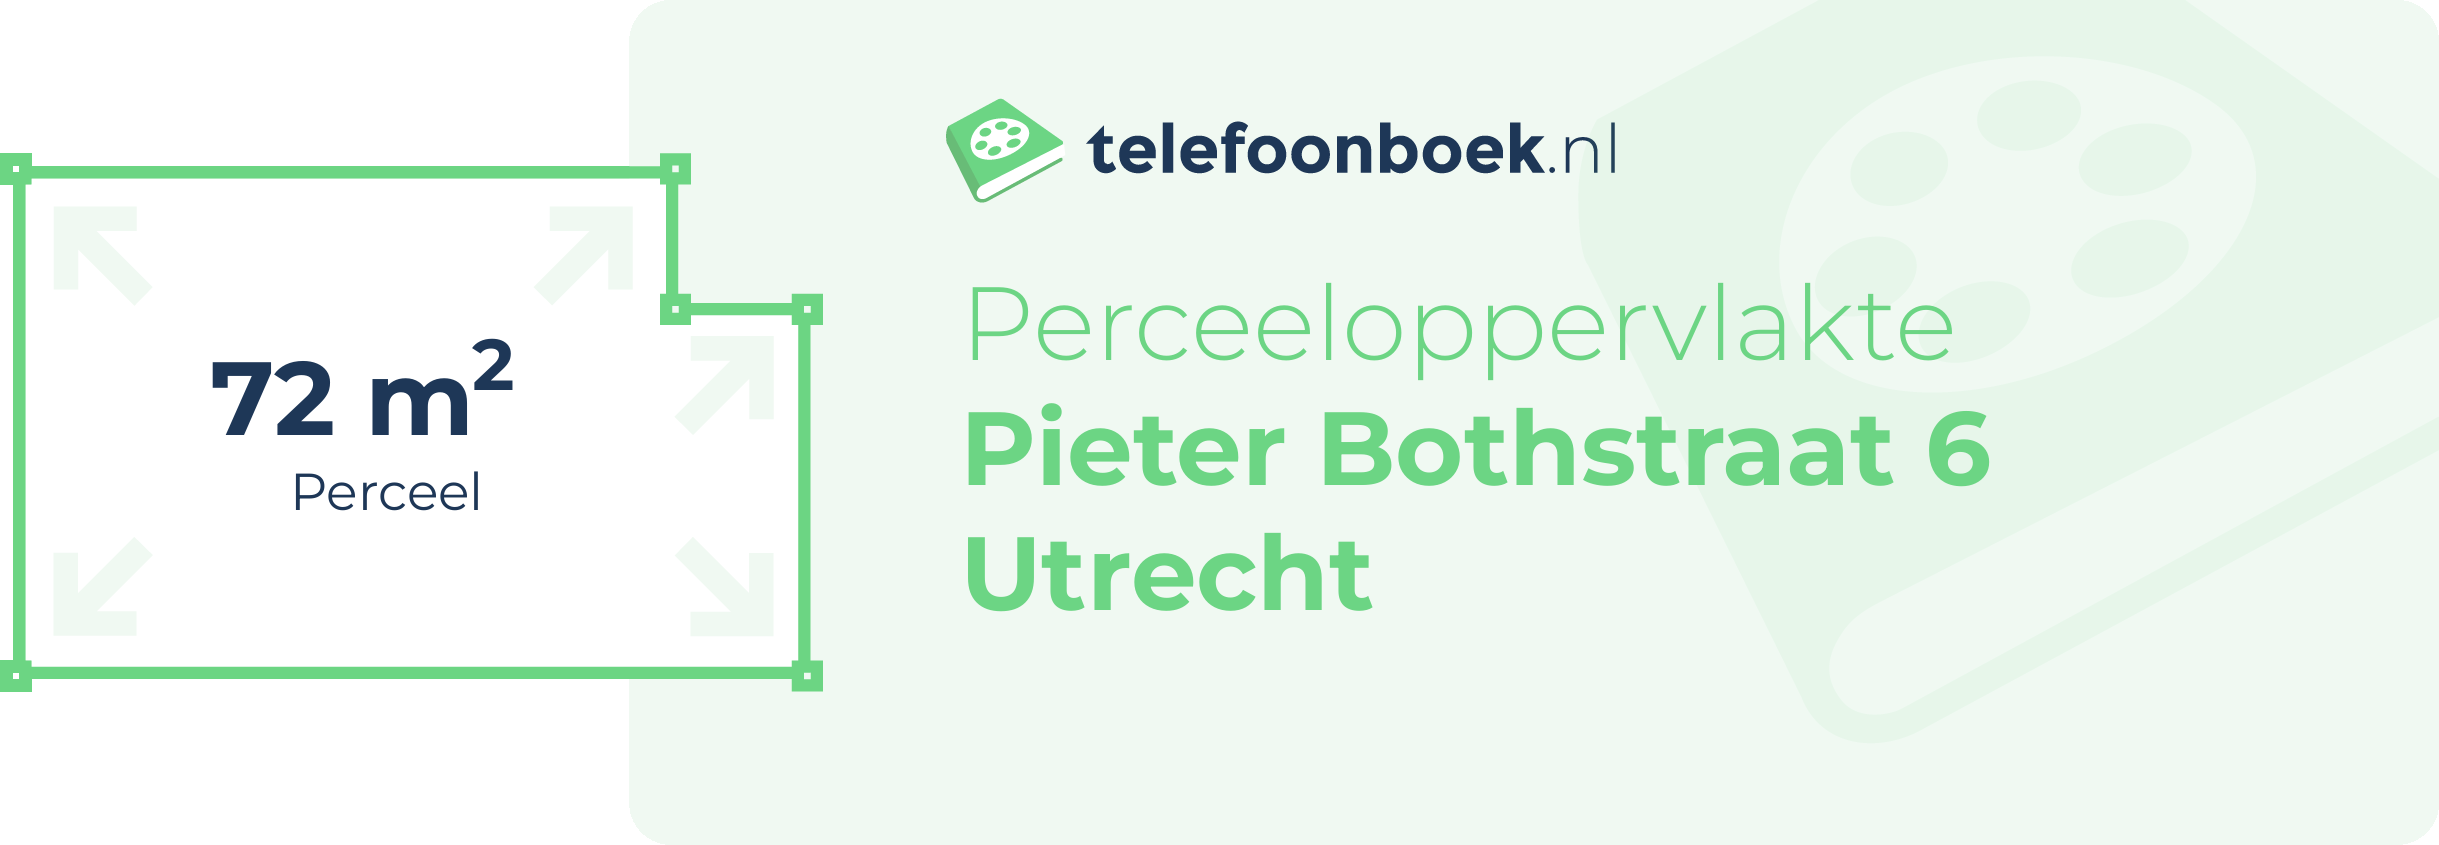 Perceeloppervlakte Pieter Bothstraat 6 Utrecht